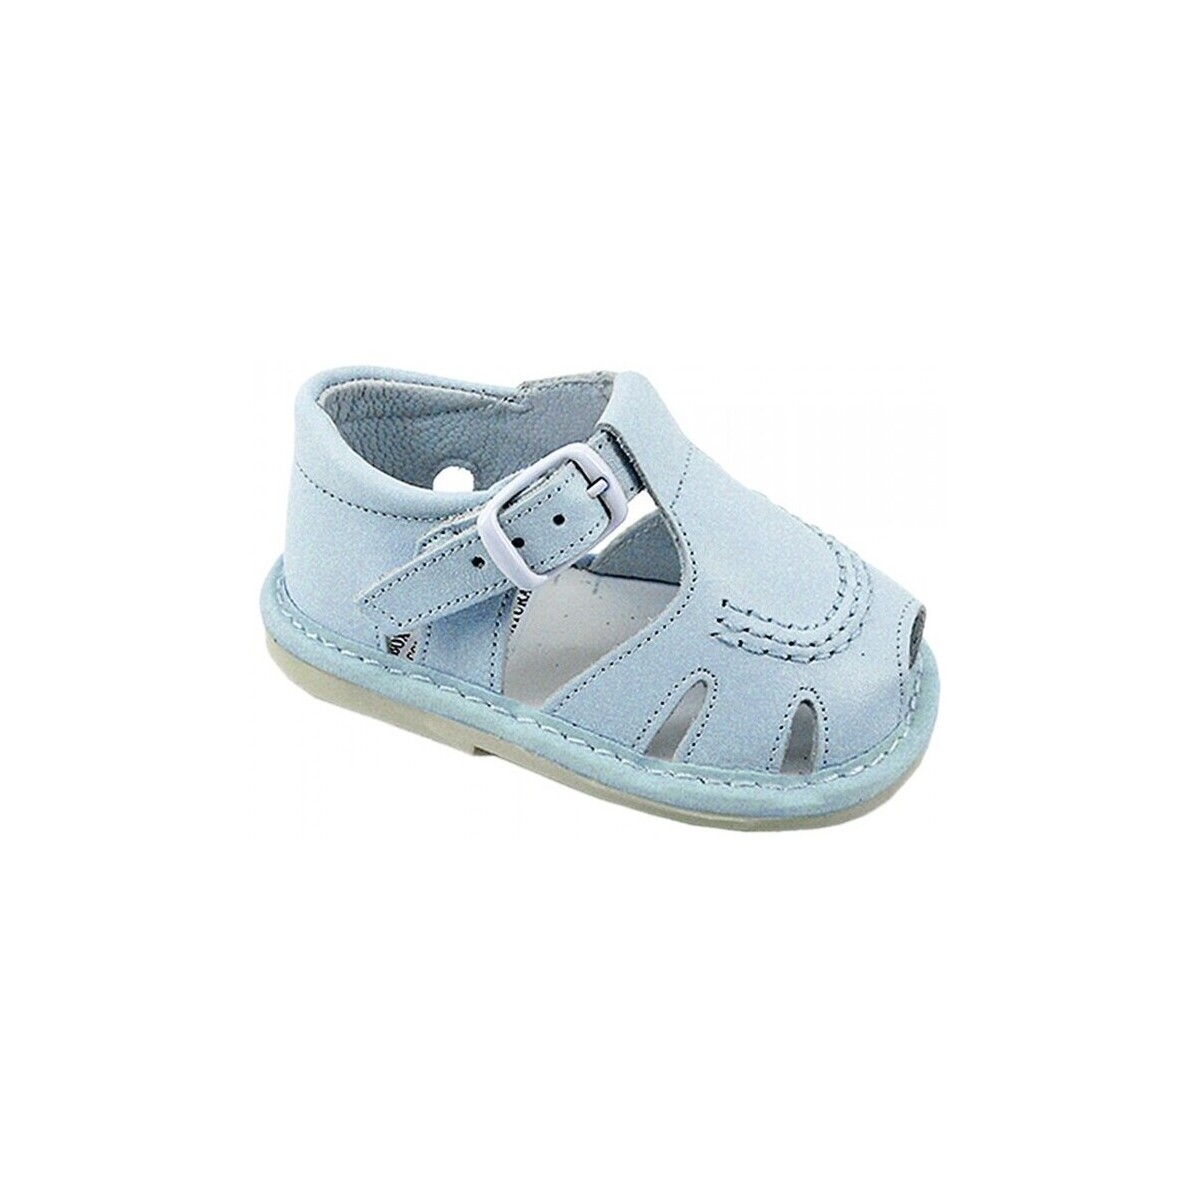 Schuhe Sandalen / Sandaletten Colores 25386-15 Blau